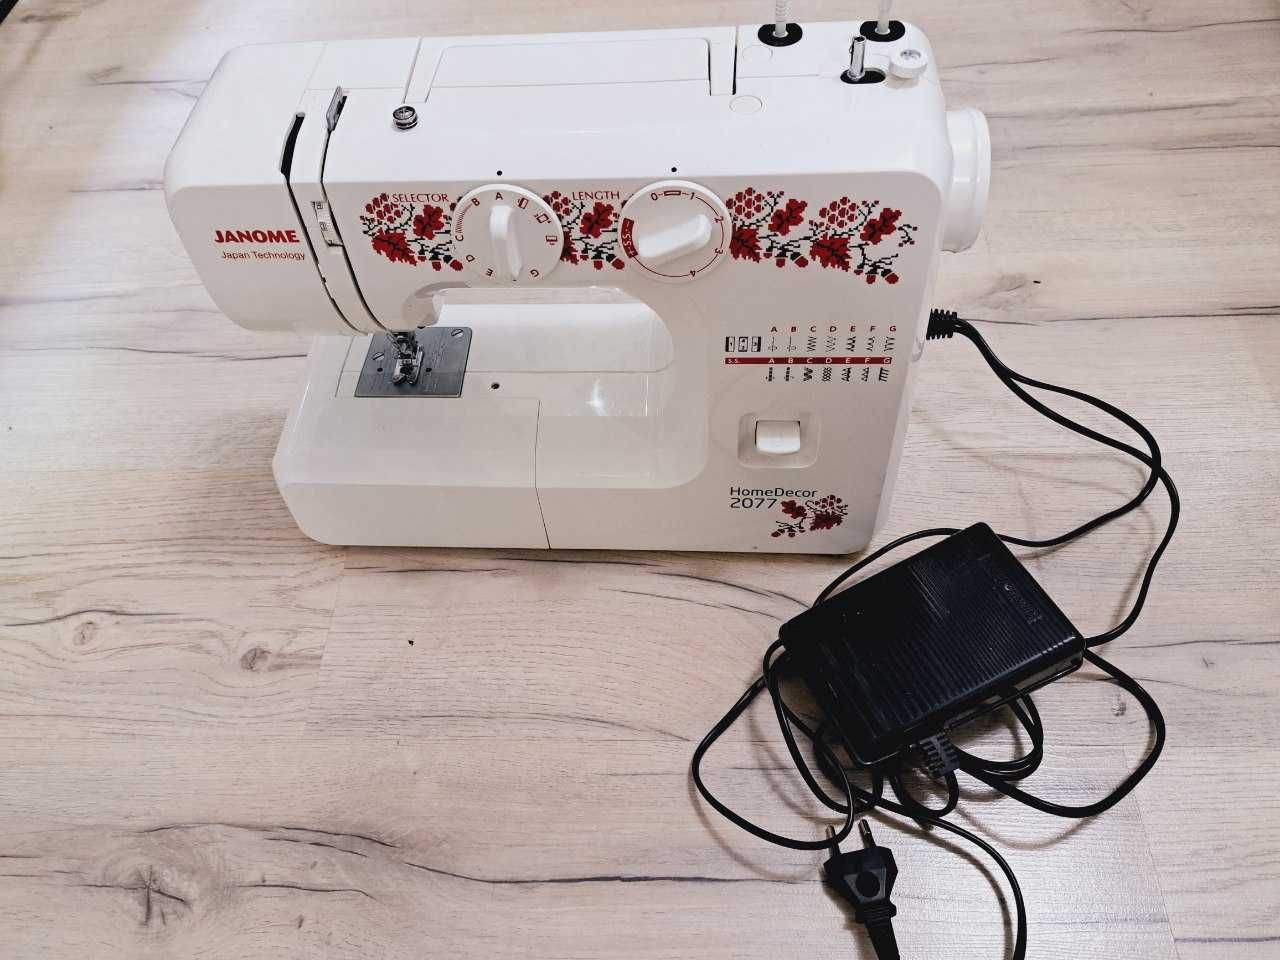 Продаётся швейная машинка от компании Janome HomeDecor 2077